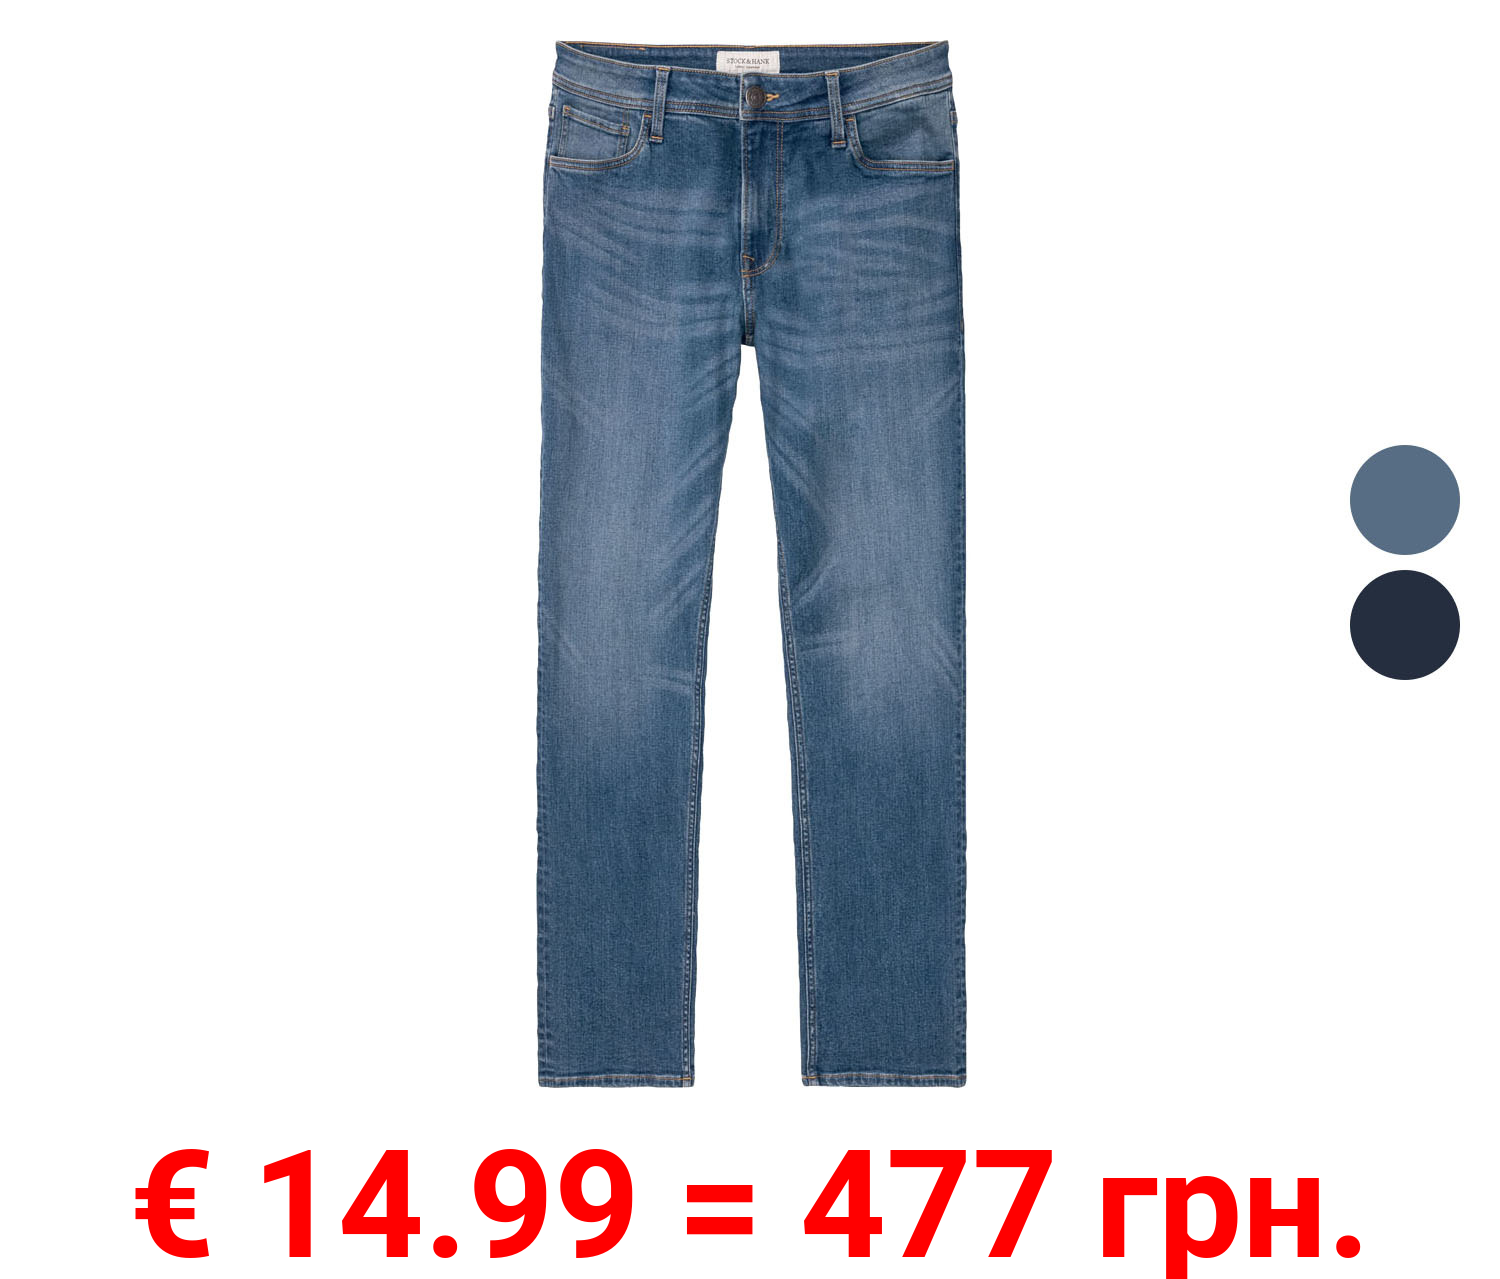 Stock&Hank Jeans Herren, trendiger used look